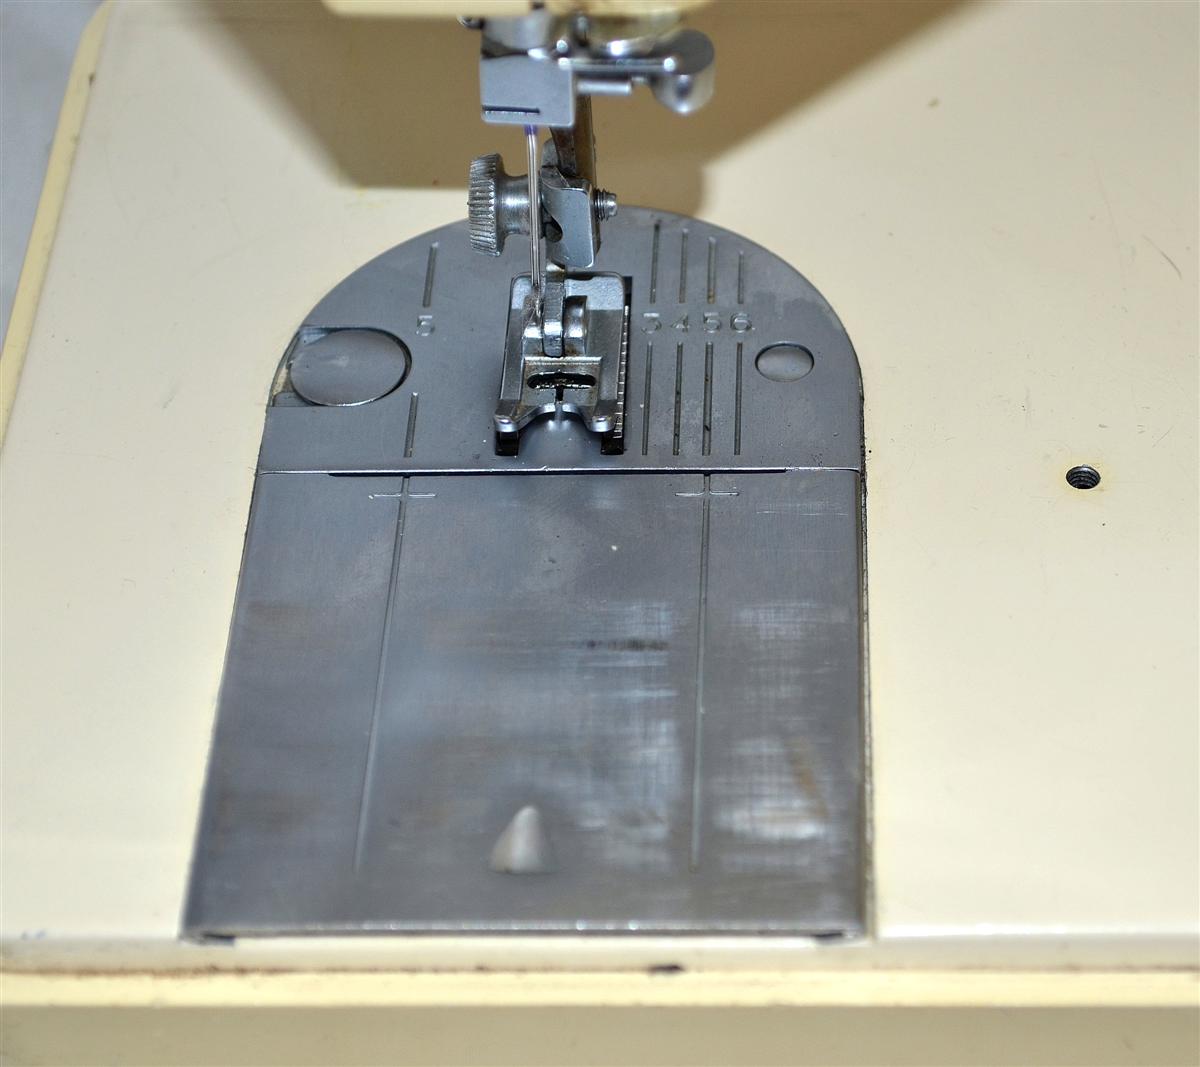 Singer Model 354 Genie Sewing Machine with Original Case | eBay